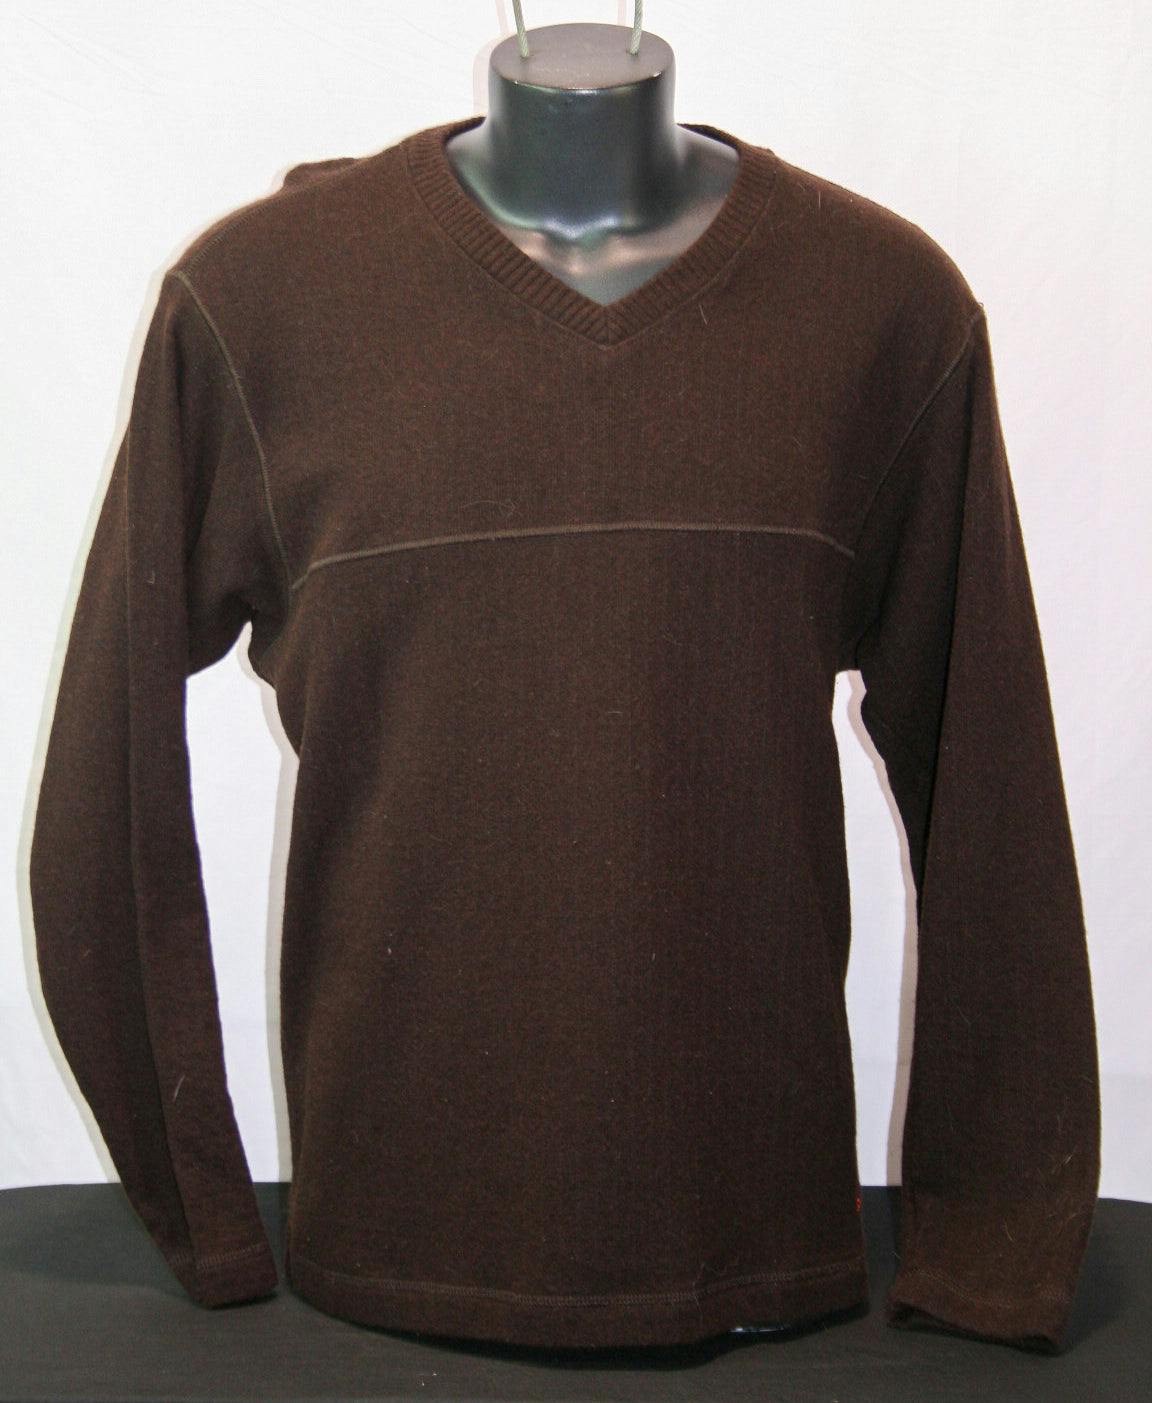 Patagonia Sweater - Men's Large